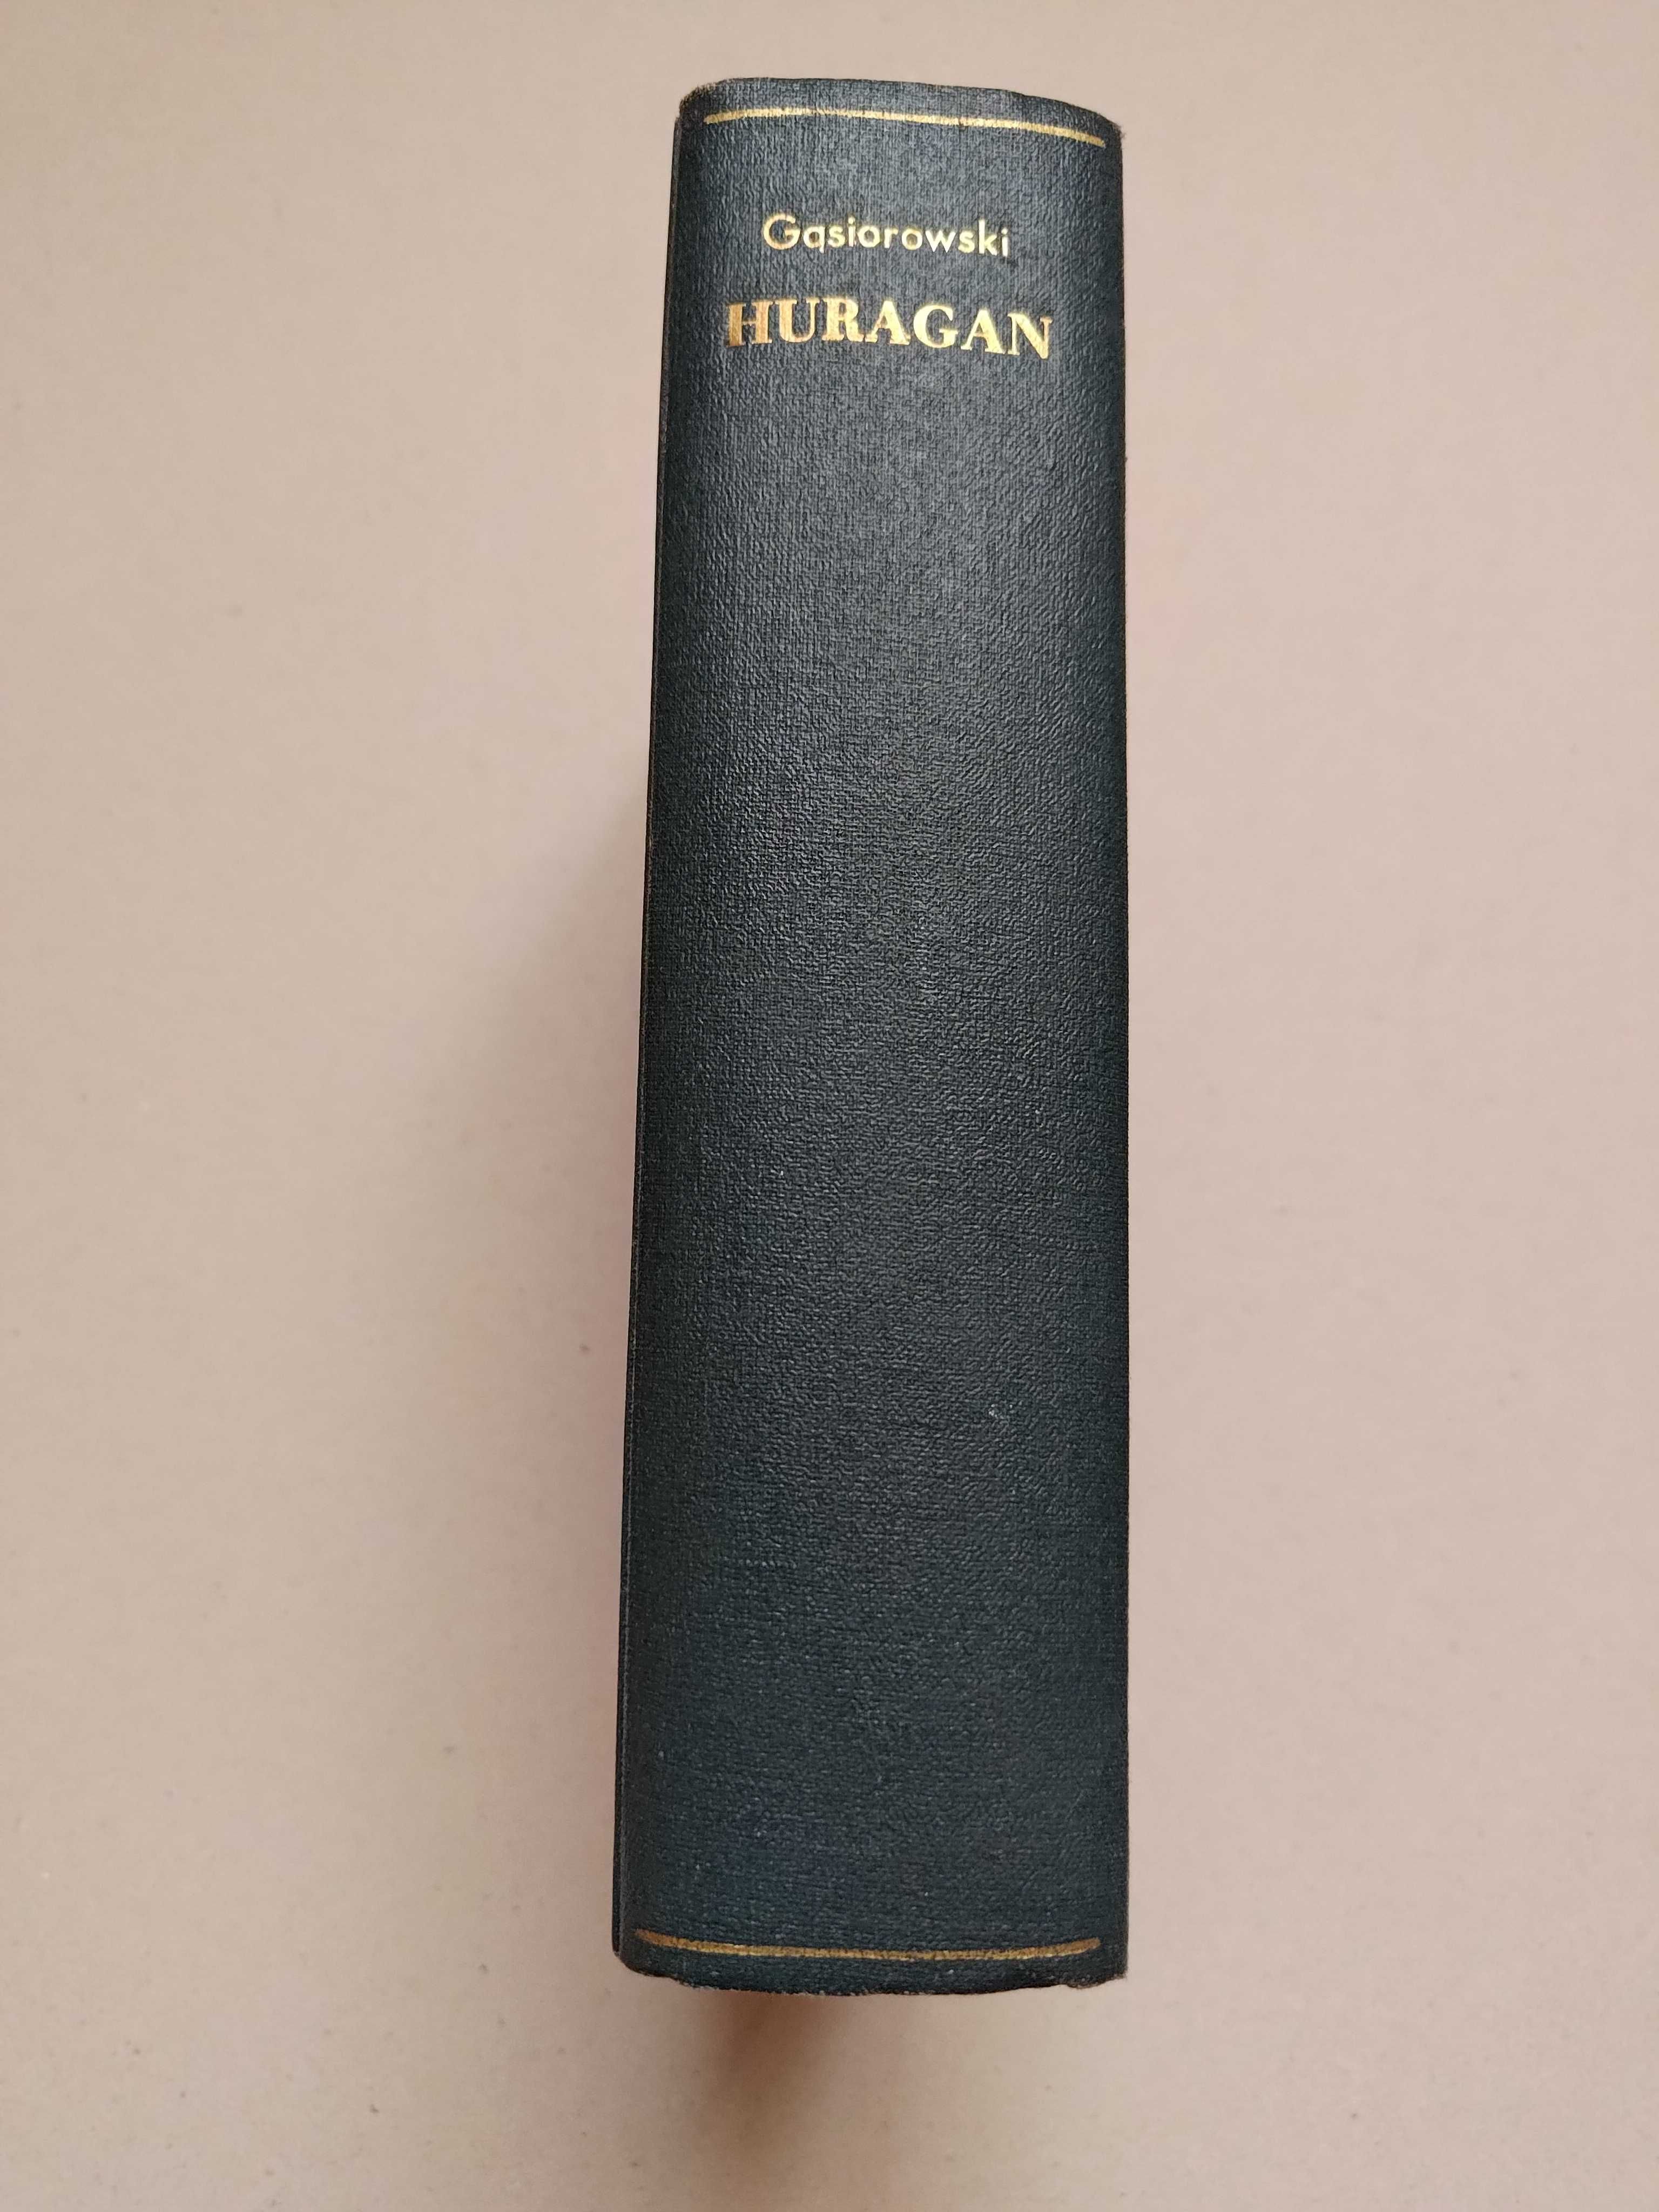 HURAGAN - Gąsiorowski - tom 1 i 2 - wydanie z 1946 roku - stan BDB